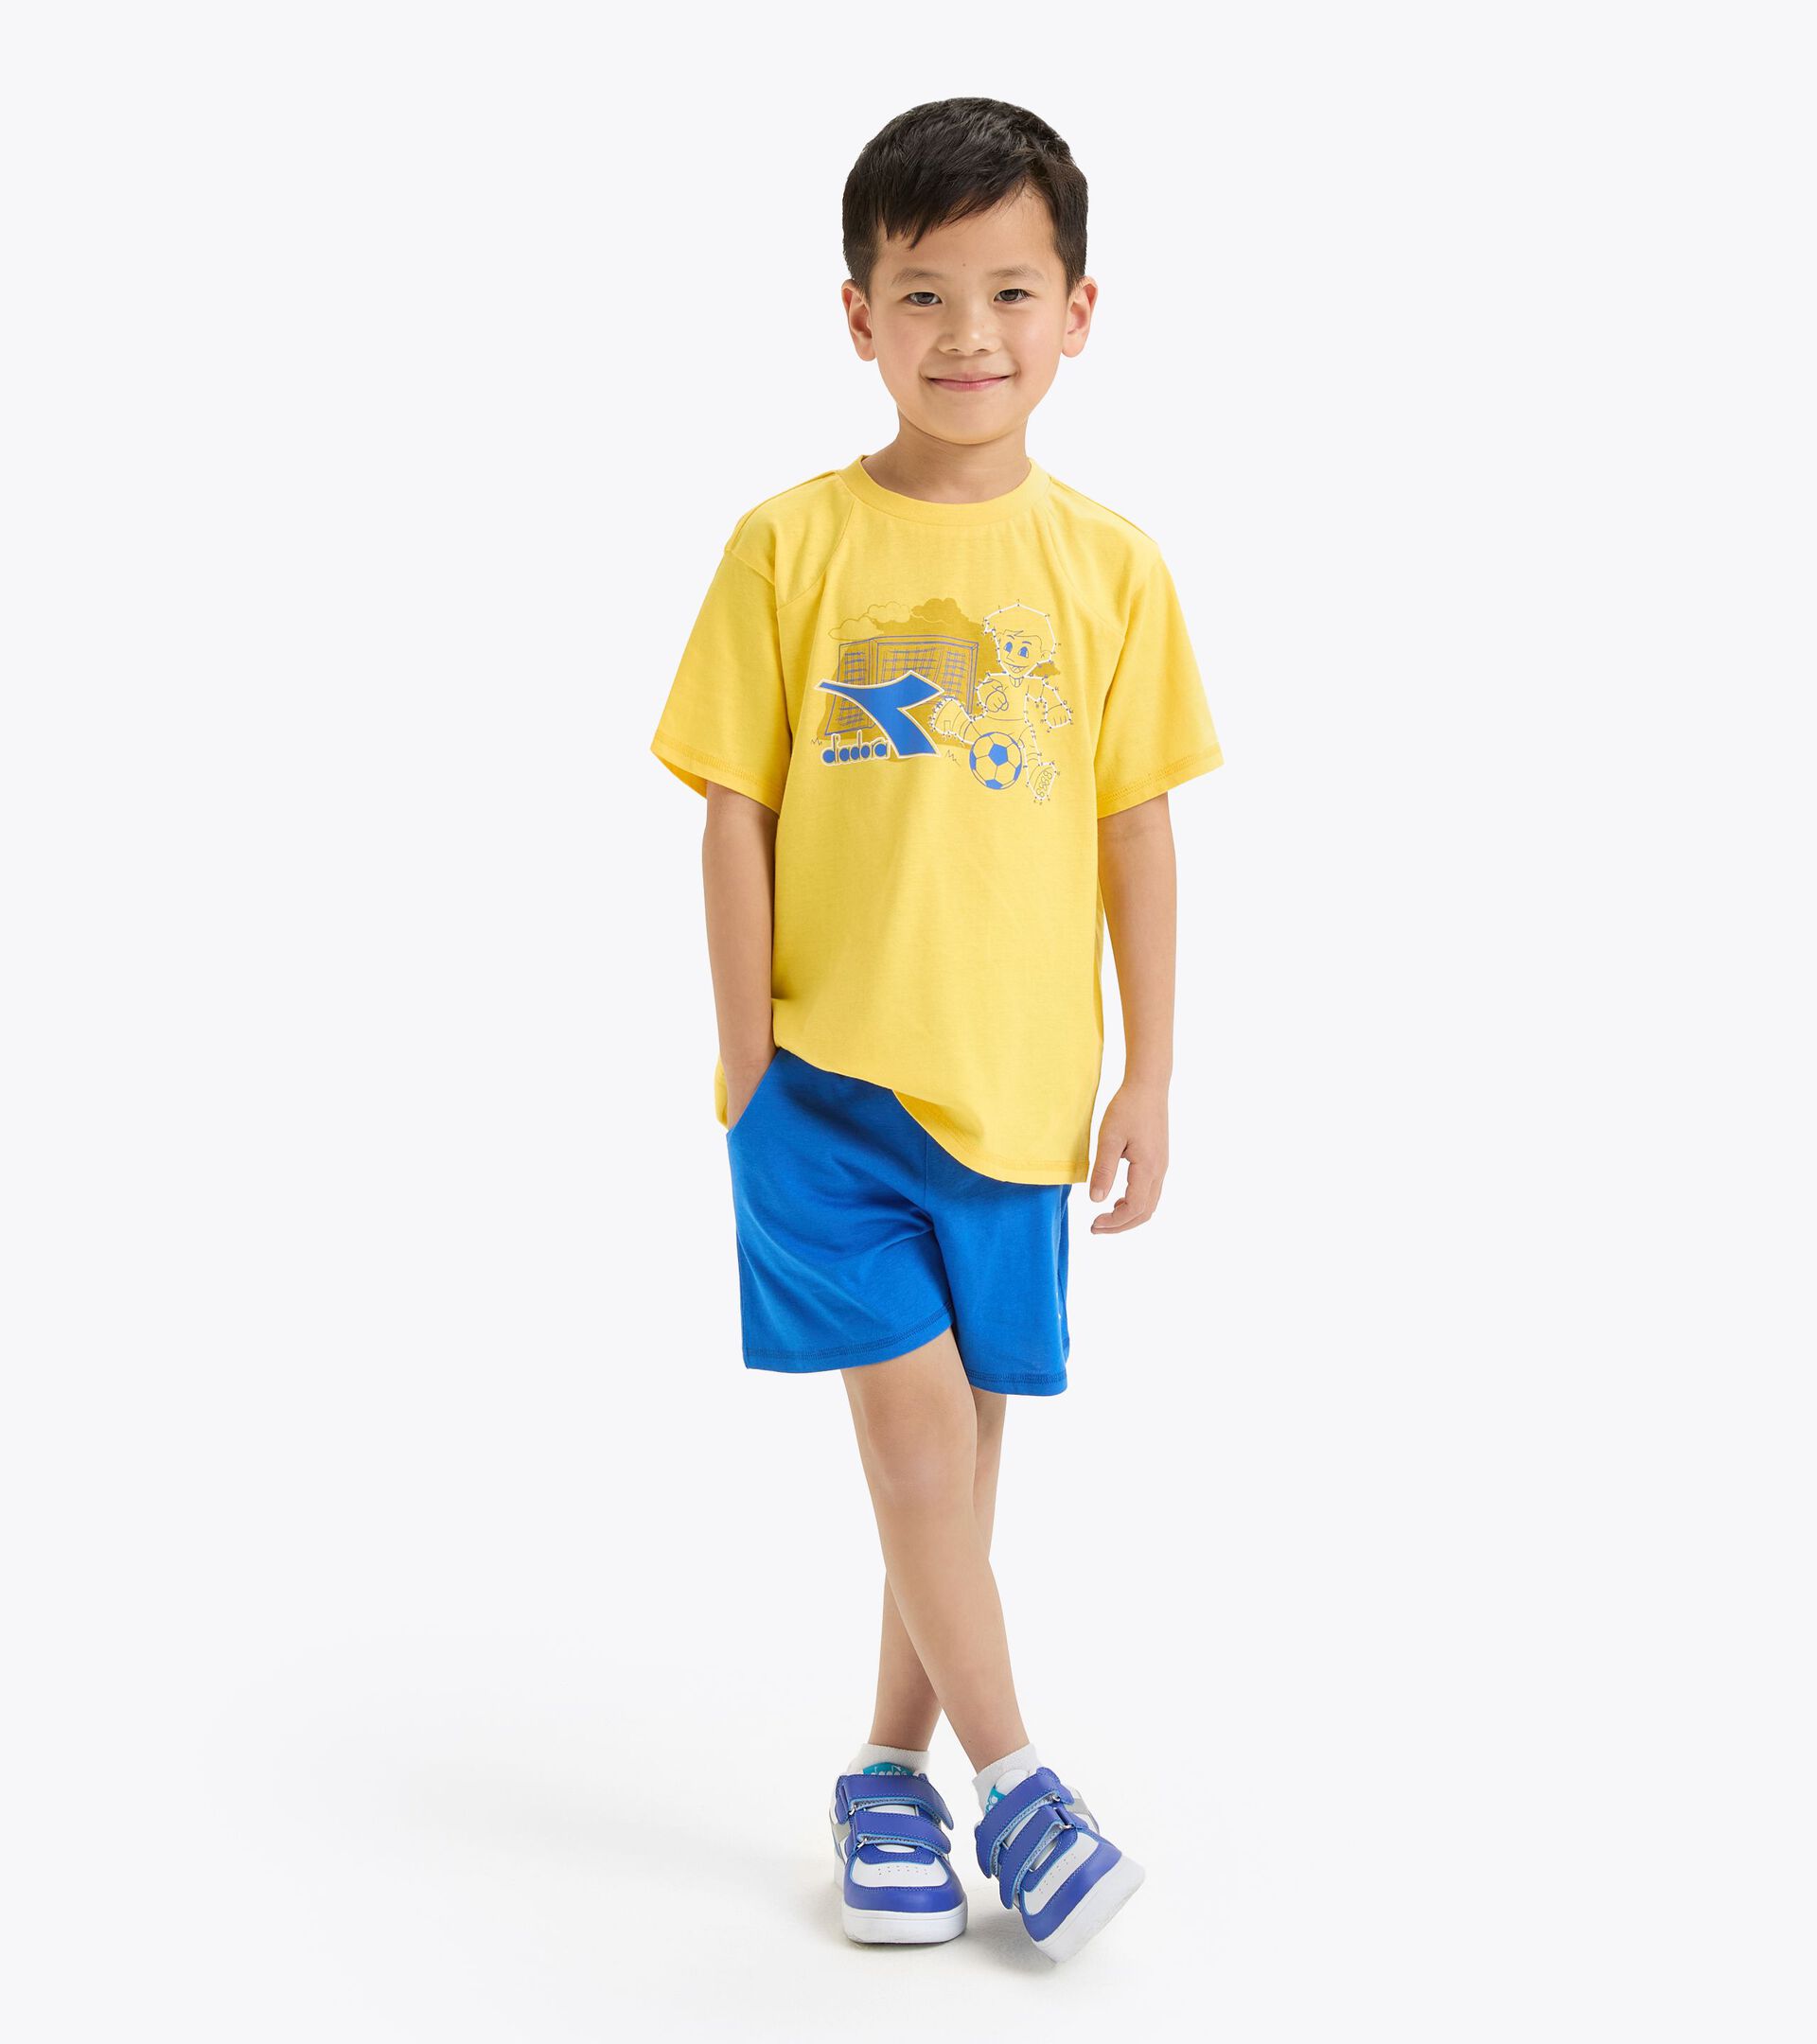 Conjunto deportivo - Camiseta y pantalones cortos - Niños y adolescentes
 JB. SET SS RIDDLE AMARILLO ALAMO TEMBLON OR - Diadora